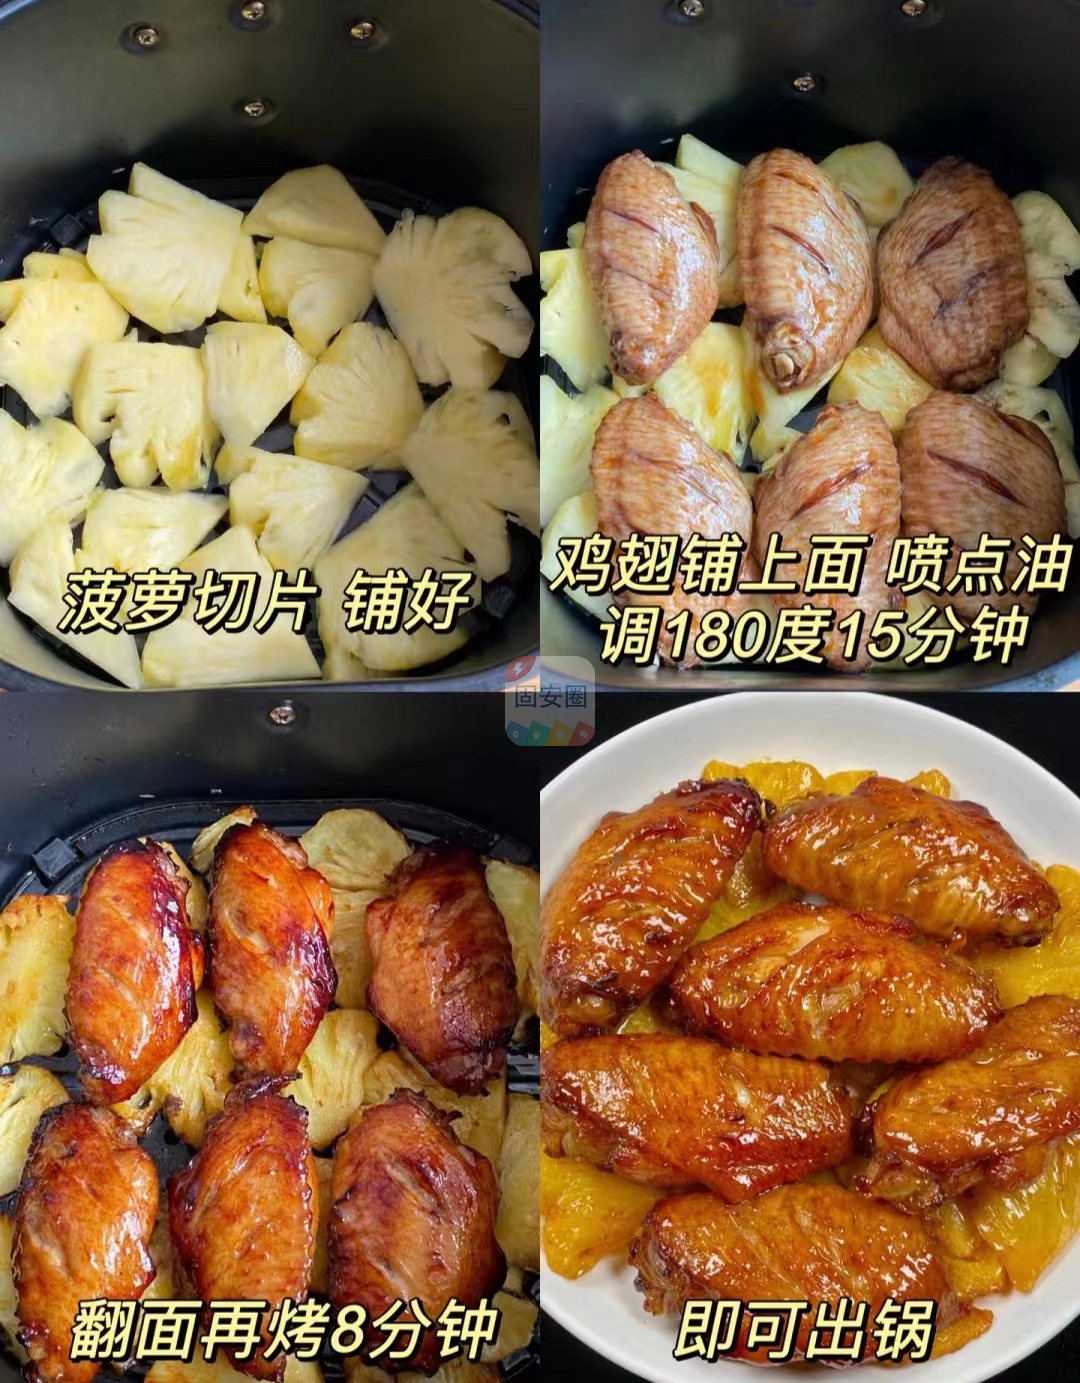 菠萝烤鸡翅，一出锅就惊艳了661 作者:中国大厨 帖子ID:205946 